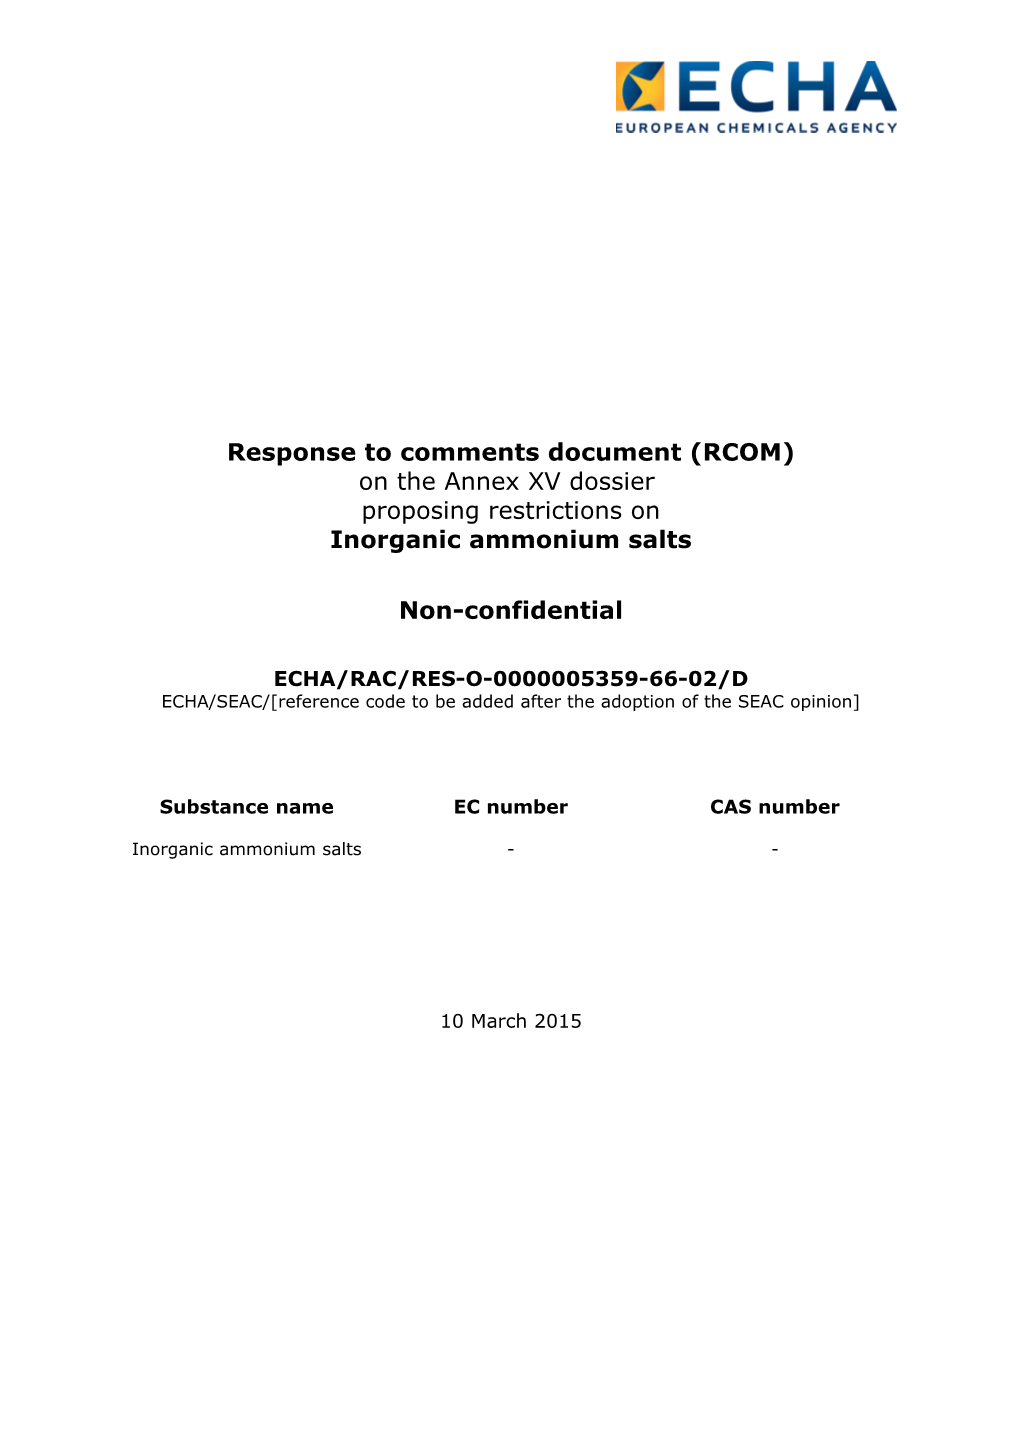 REST Amm Salts Finalcomments AVXPC Public DS Rac Rapporteurs Jan 2015